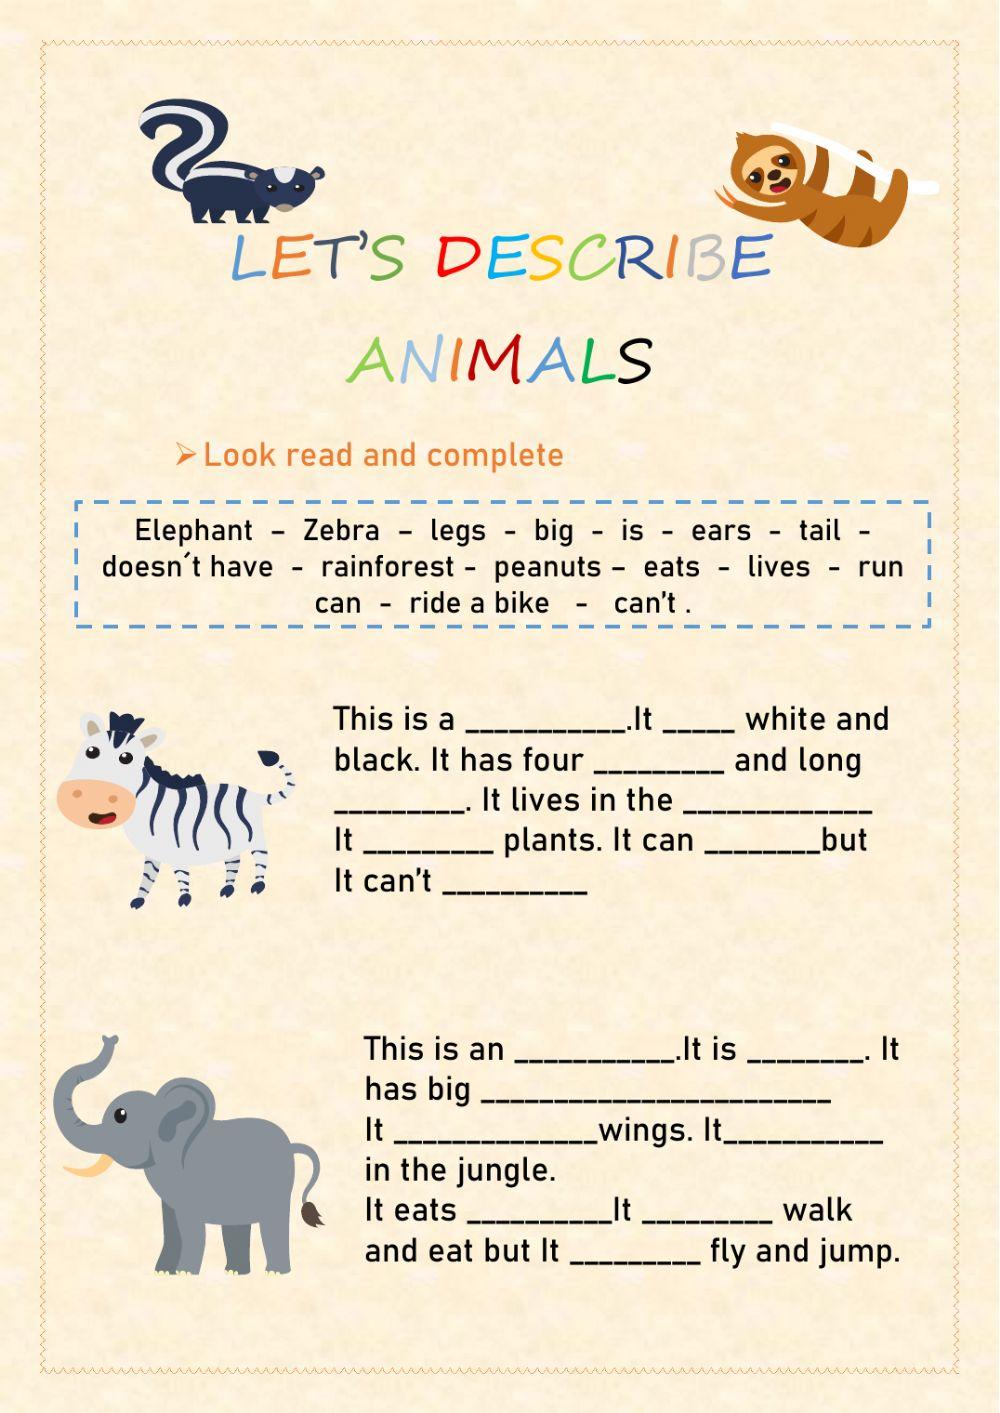 Let's describe animals